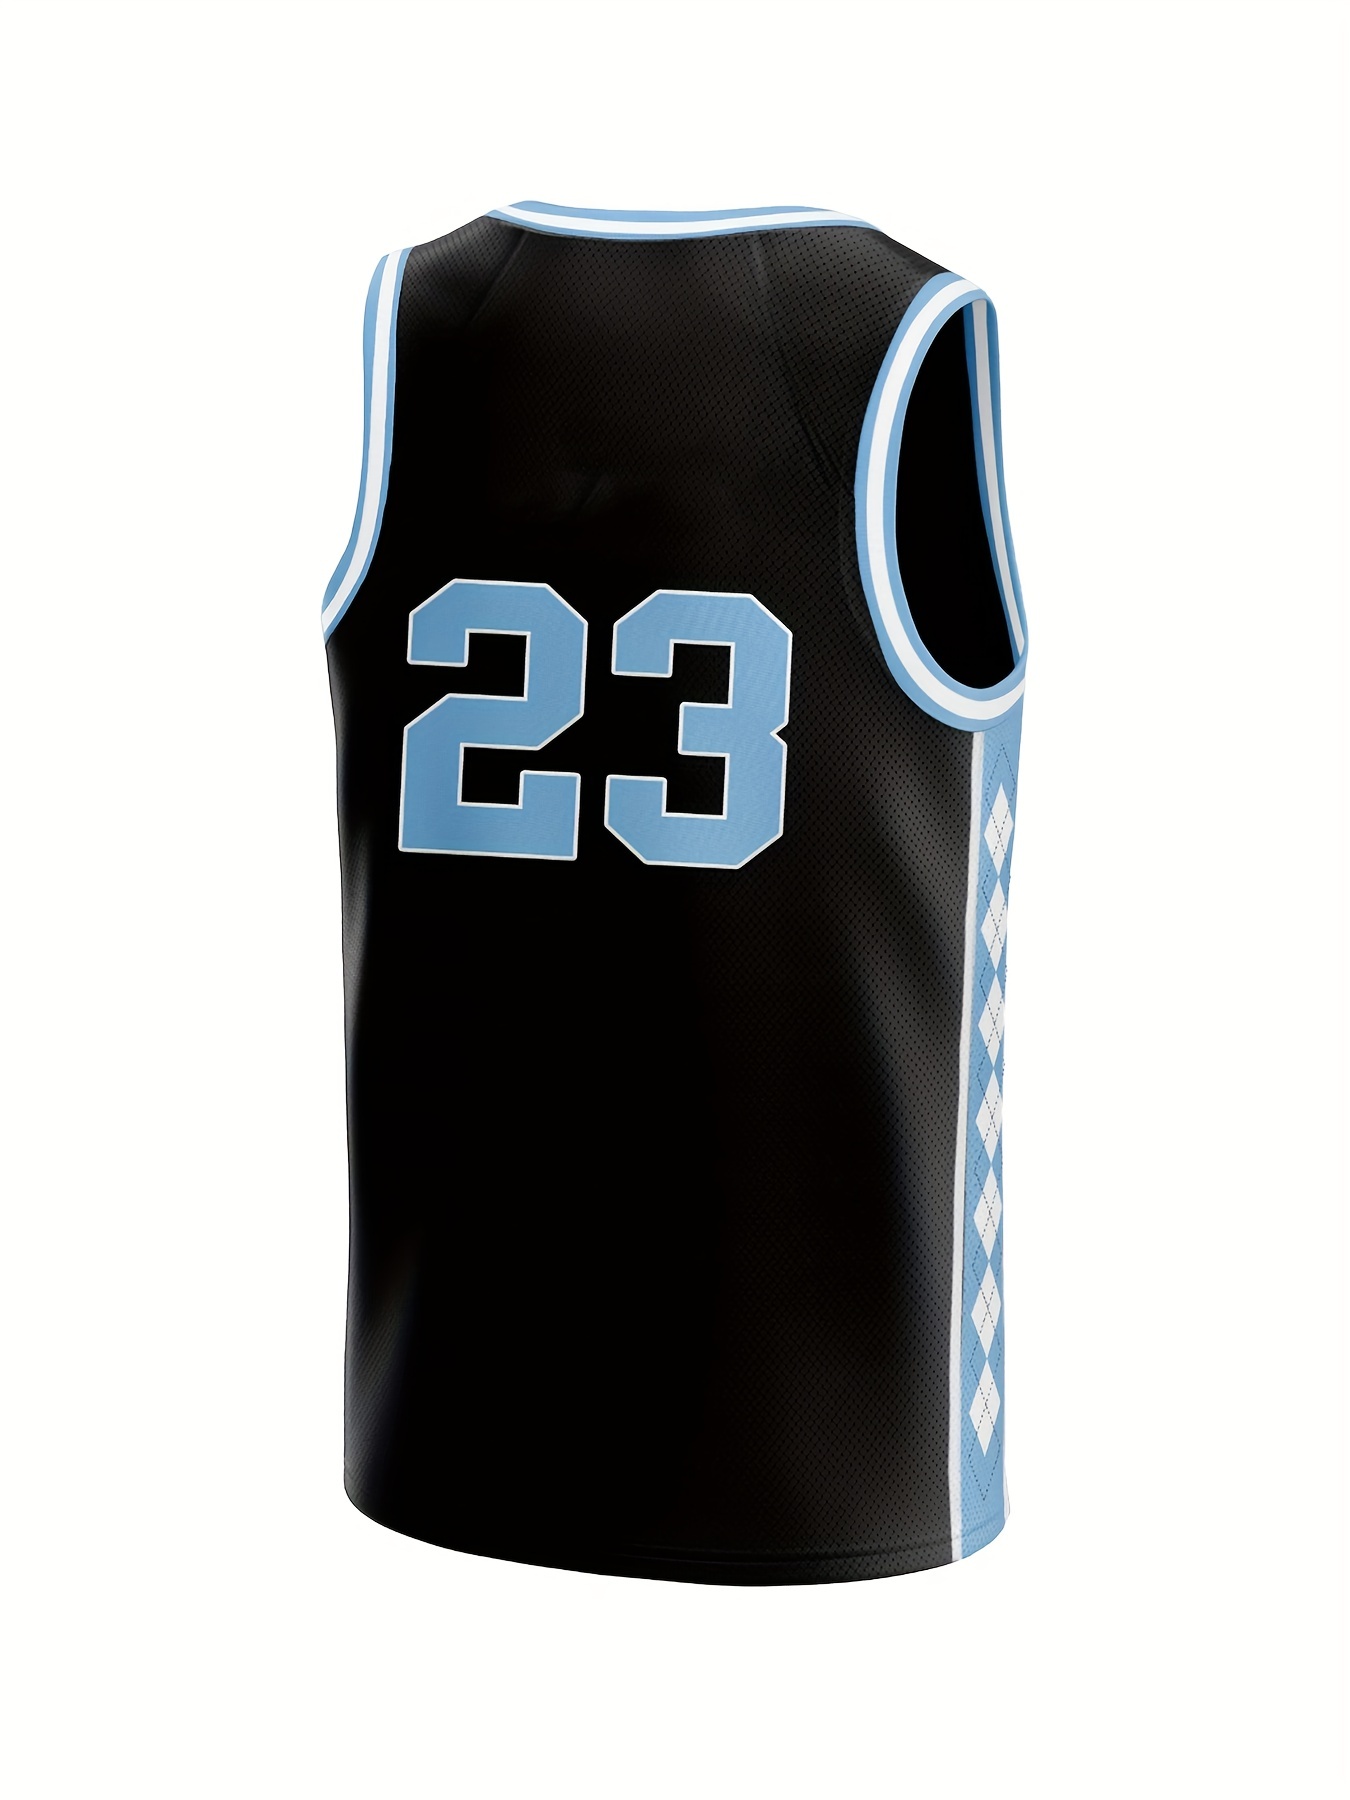 Can wear on both side basketball jersey men sportswear unique basketball  wear breathable basketball uniform for sale - AliExpress